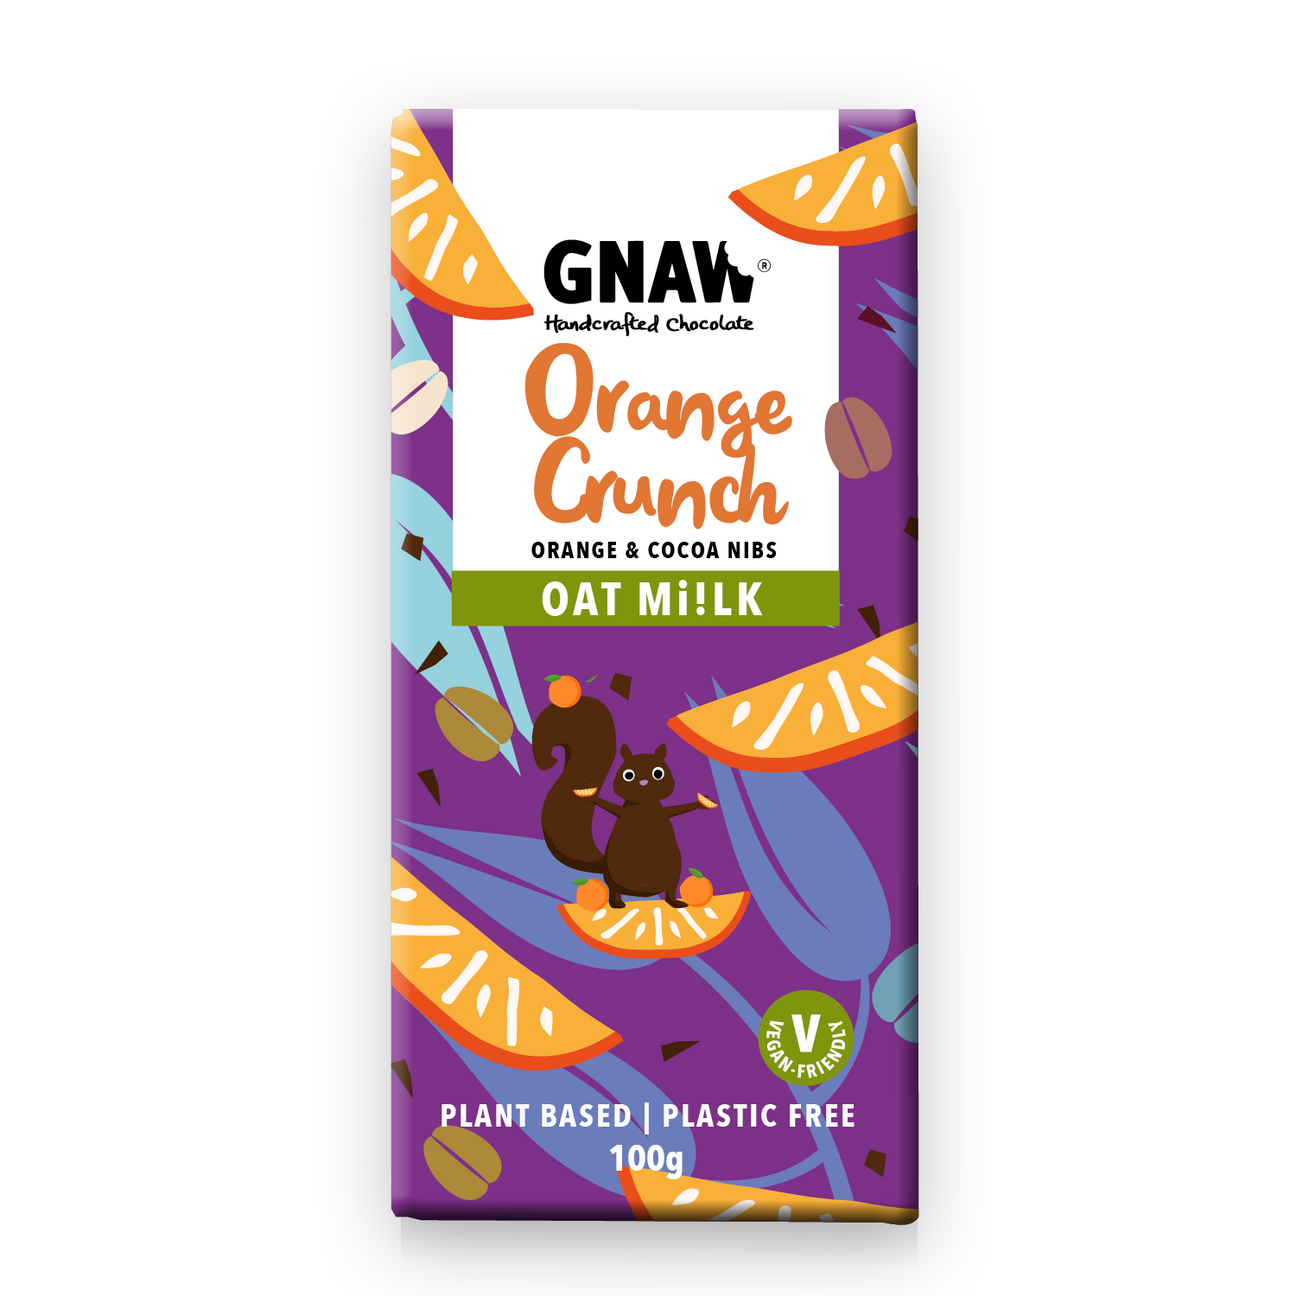 Gnaw Orange Crunch Oat M!lk Chocolate Bar (100g)